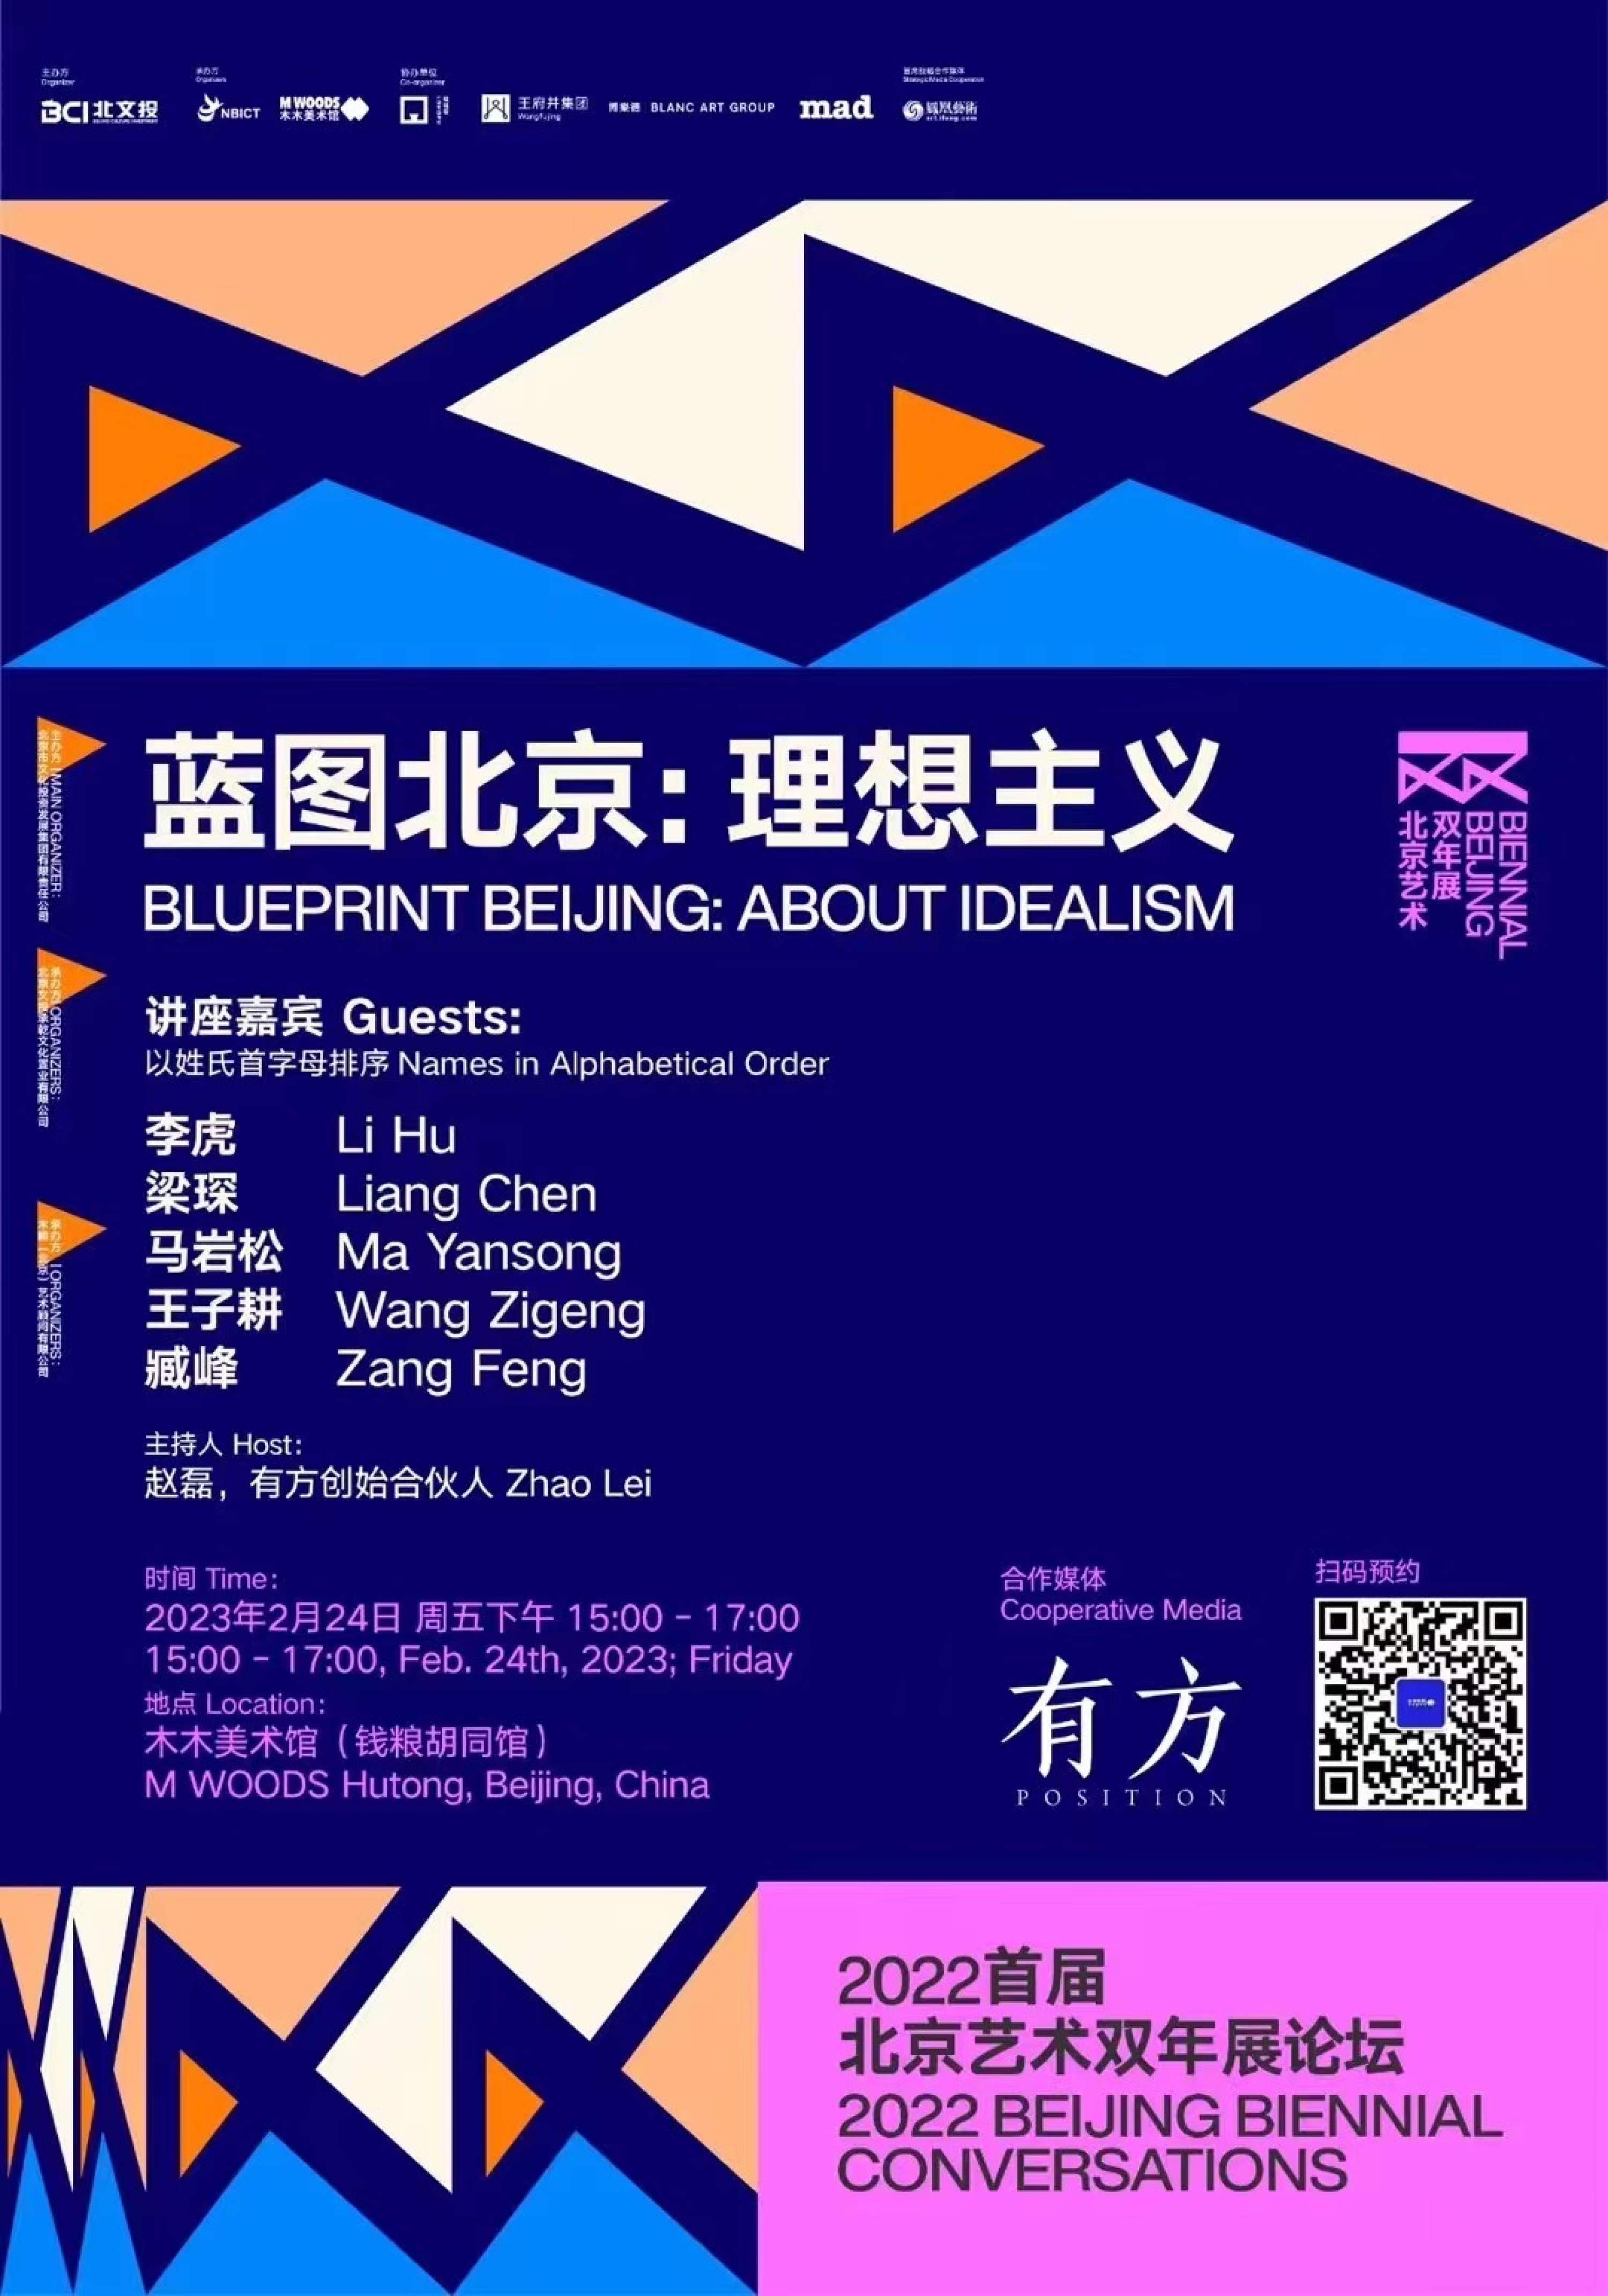 Zigeng Wang was Invited to Attend the First Beijing Art Biennale Forum “Blueprint Beijing: About Idealism”